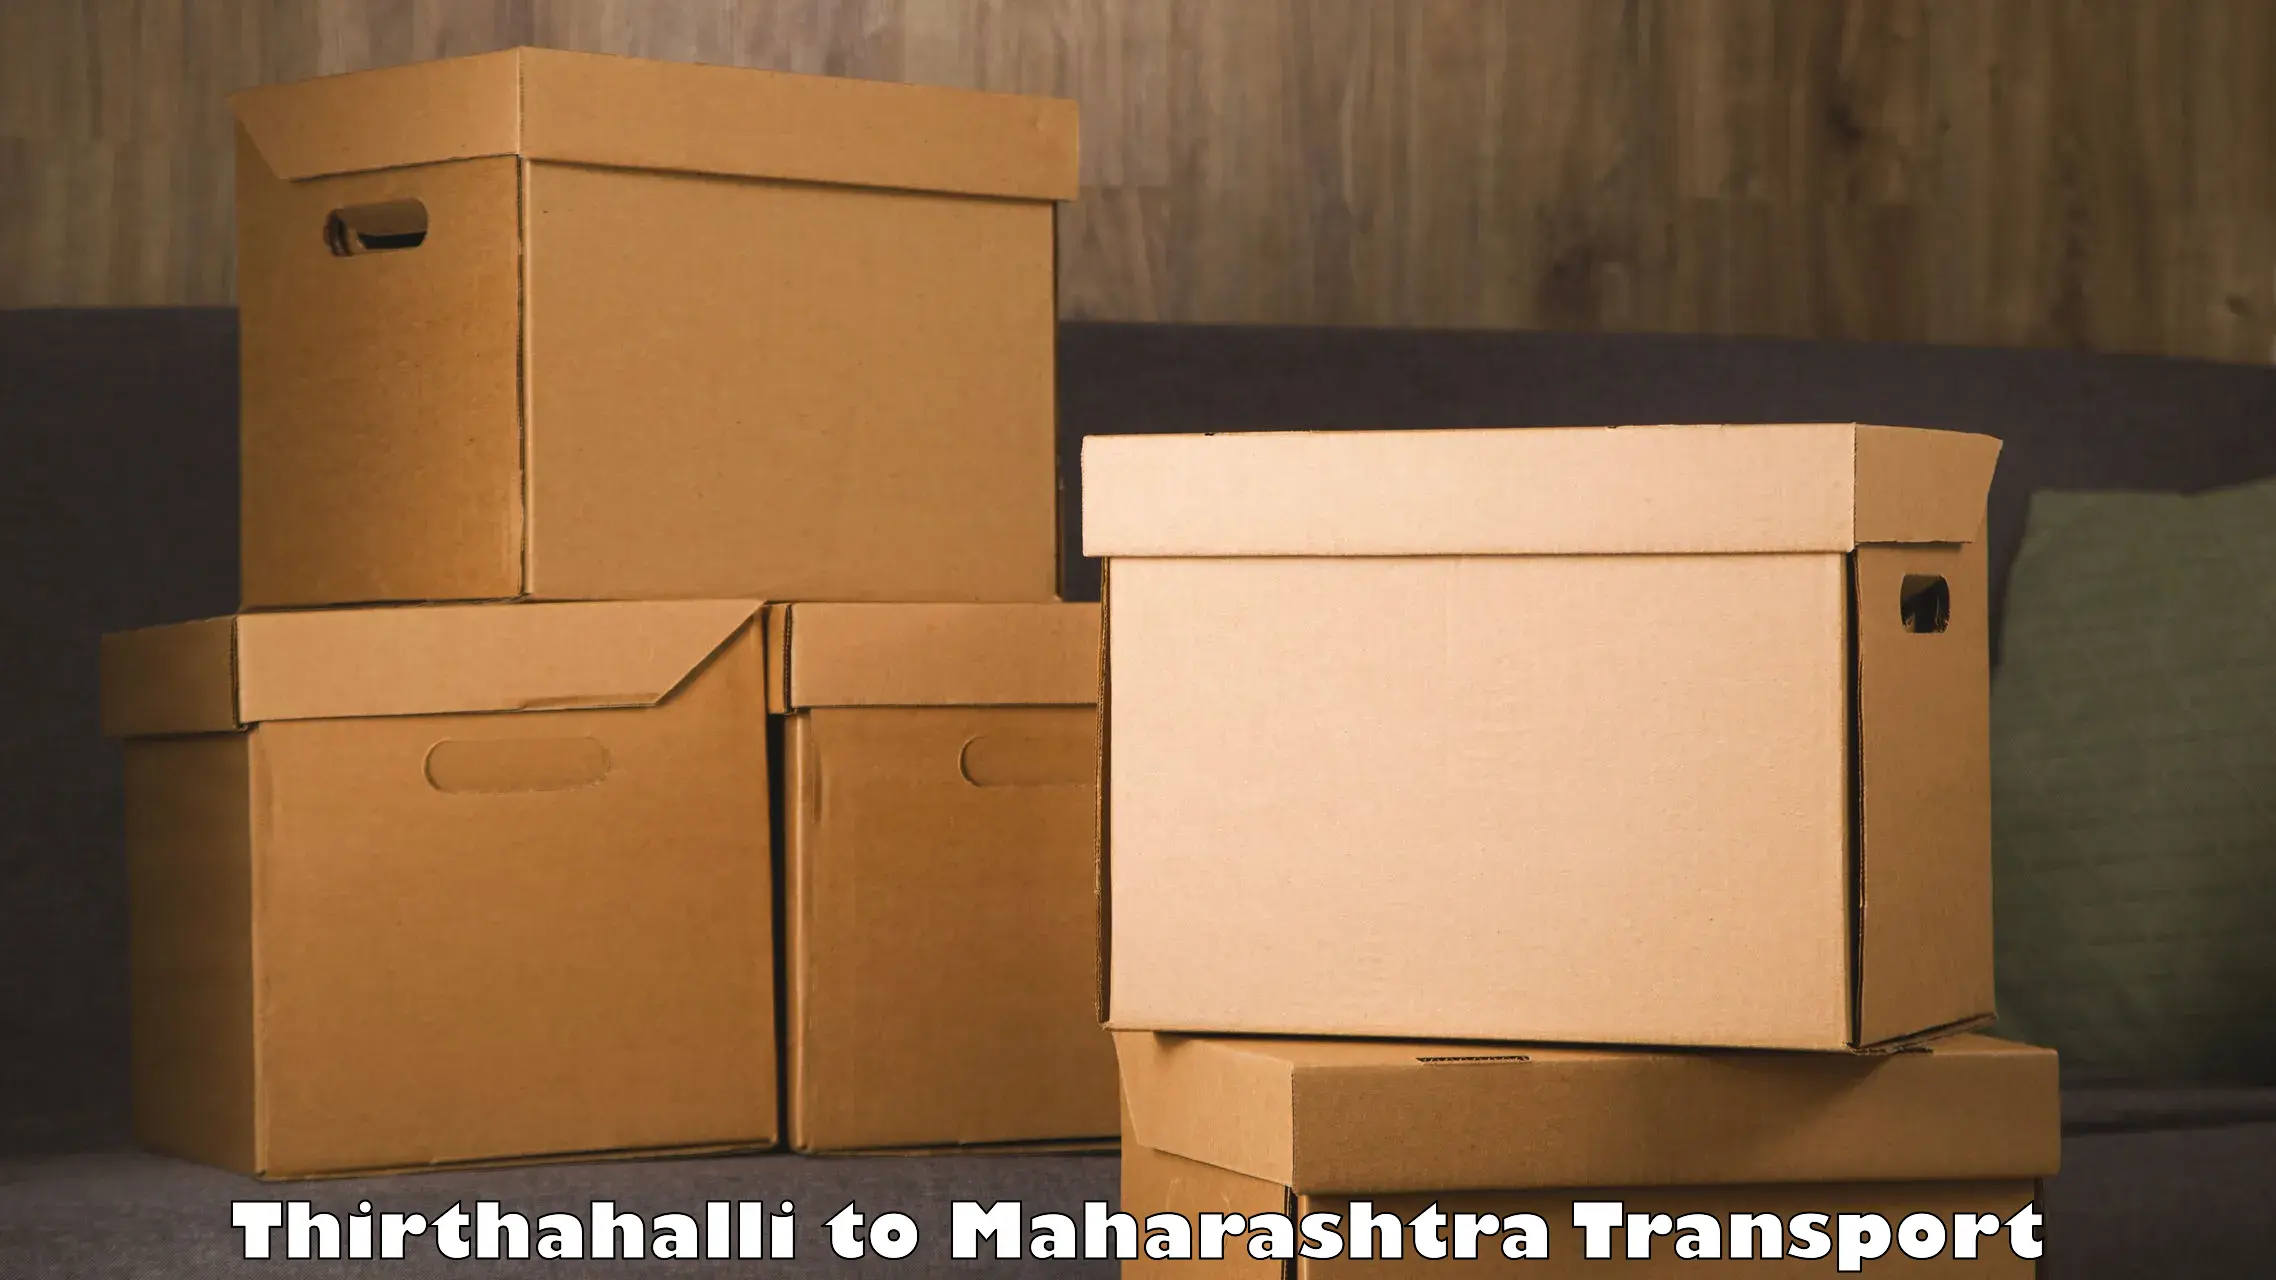 Cargo train transport services Thirthahalli to Dadar